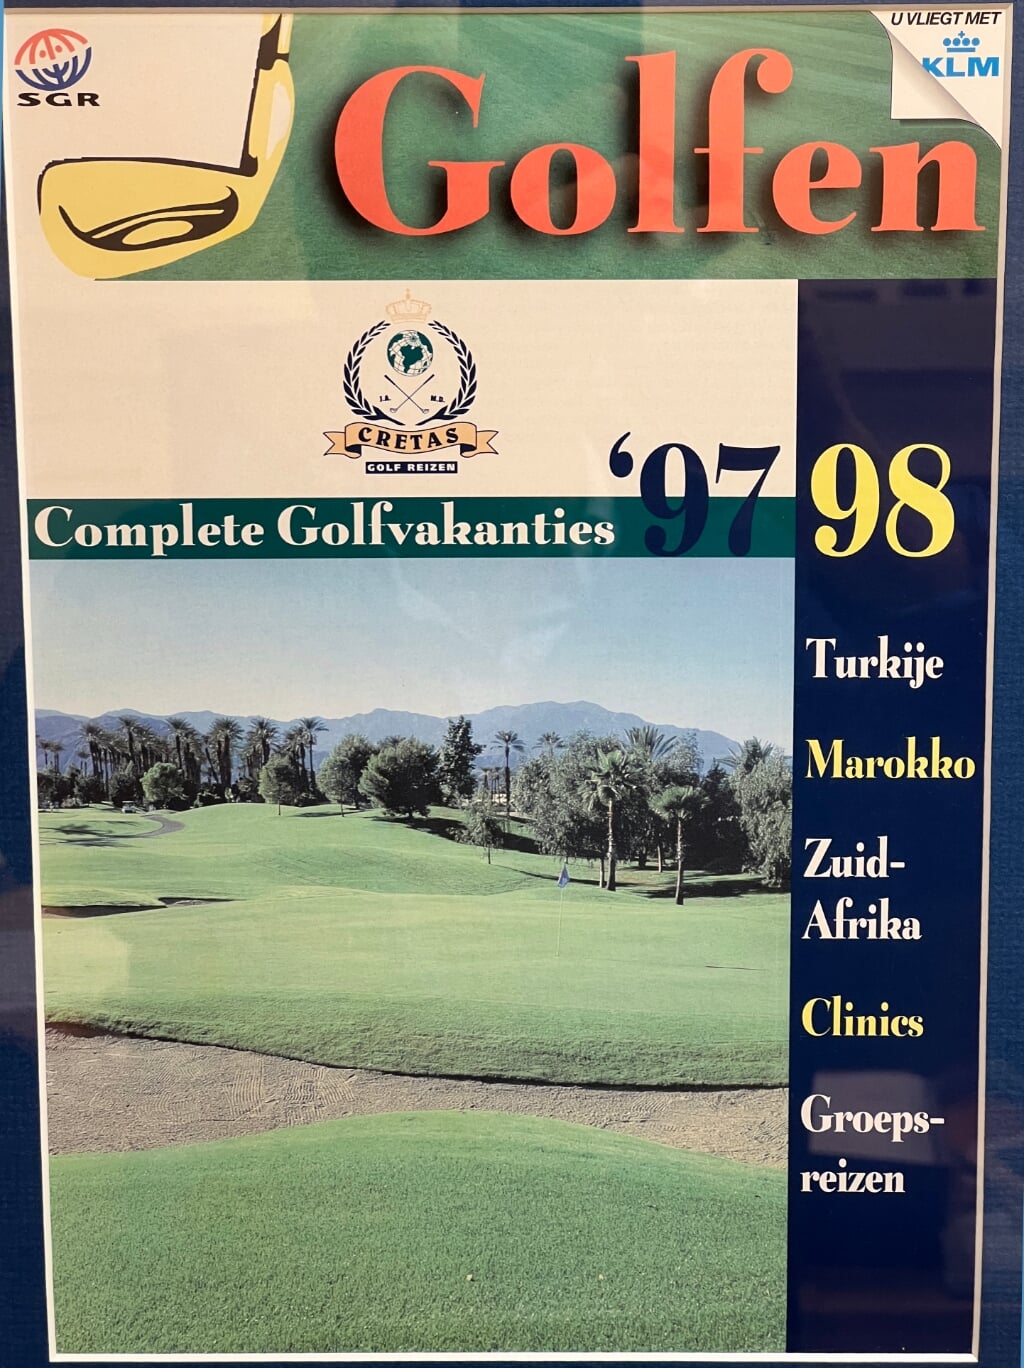 De allereerste brochure van Cretas Reizen uit 1997.